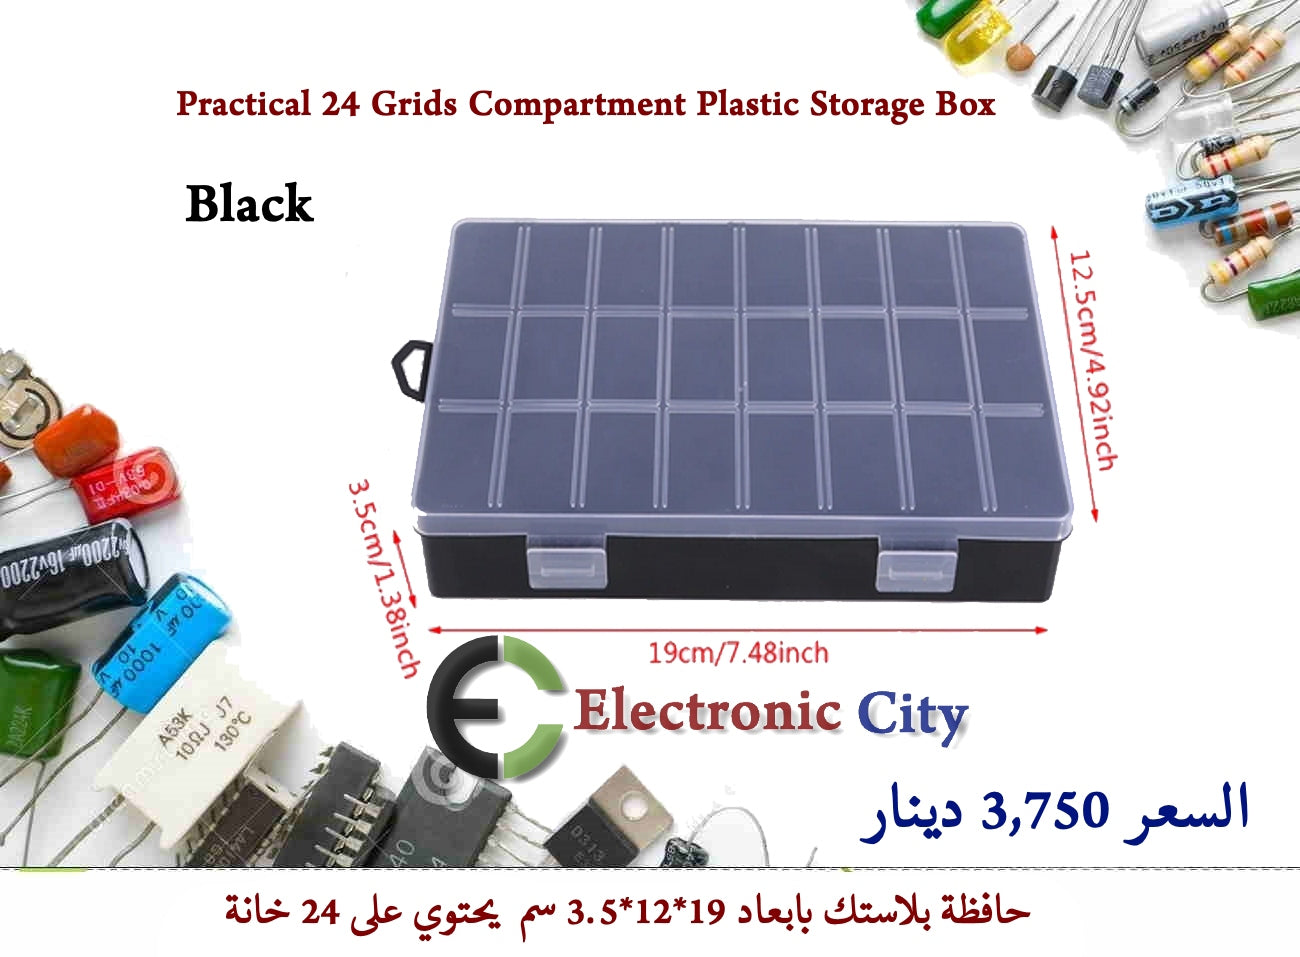 Practical 24 Grids Compartment Plastic Storage Box Black